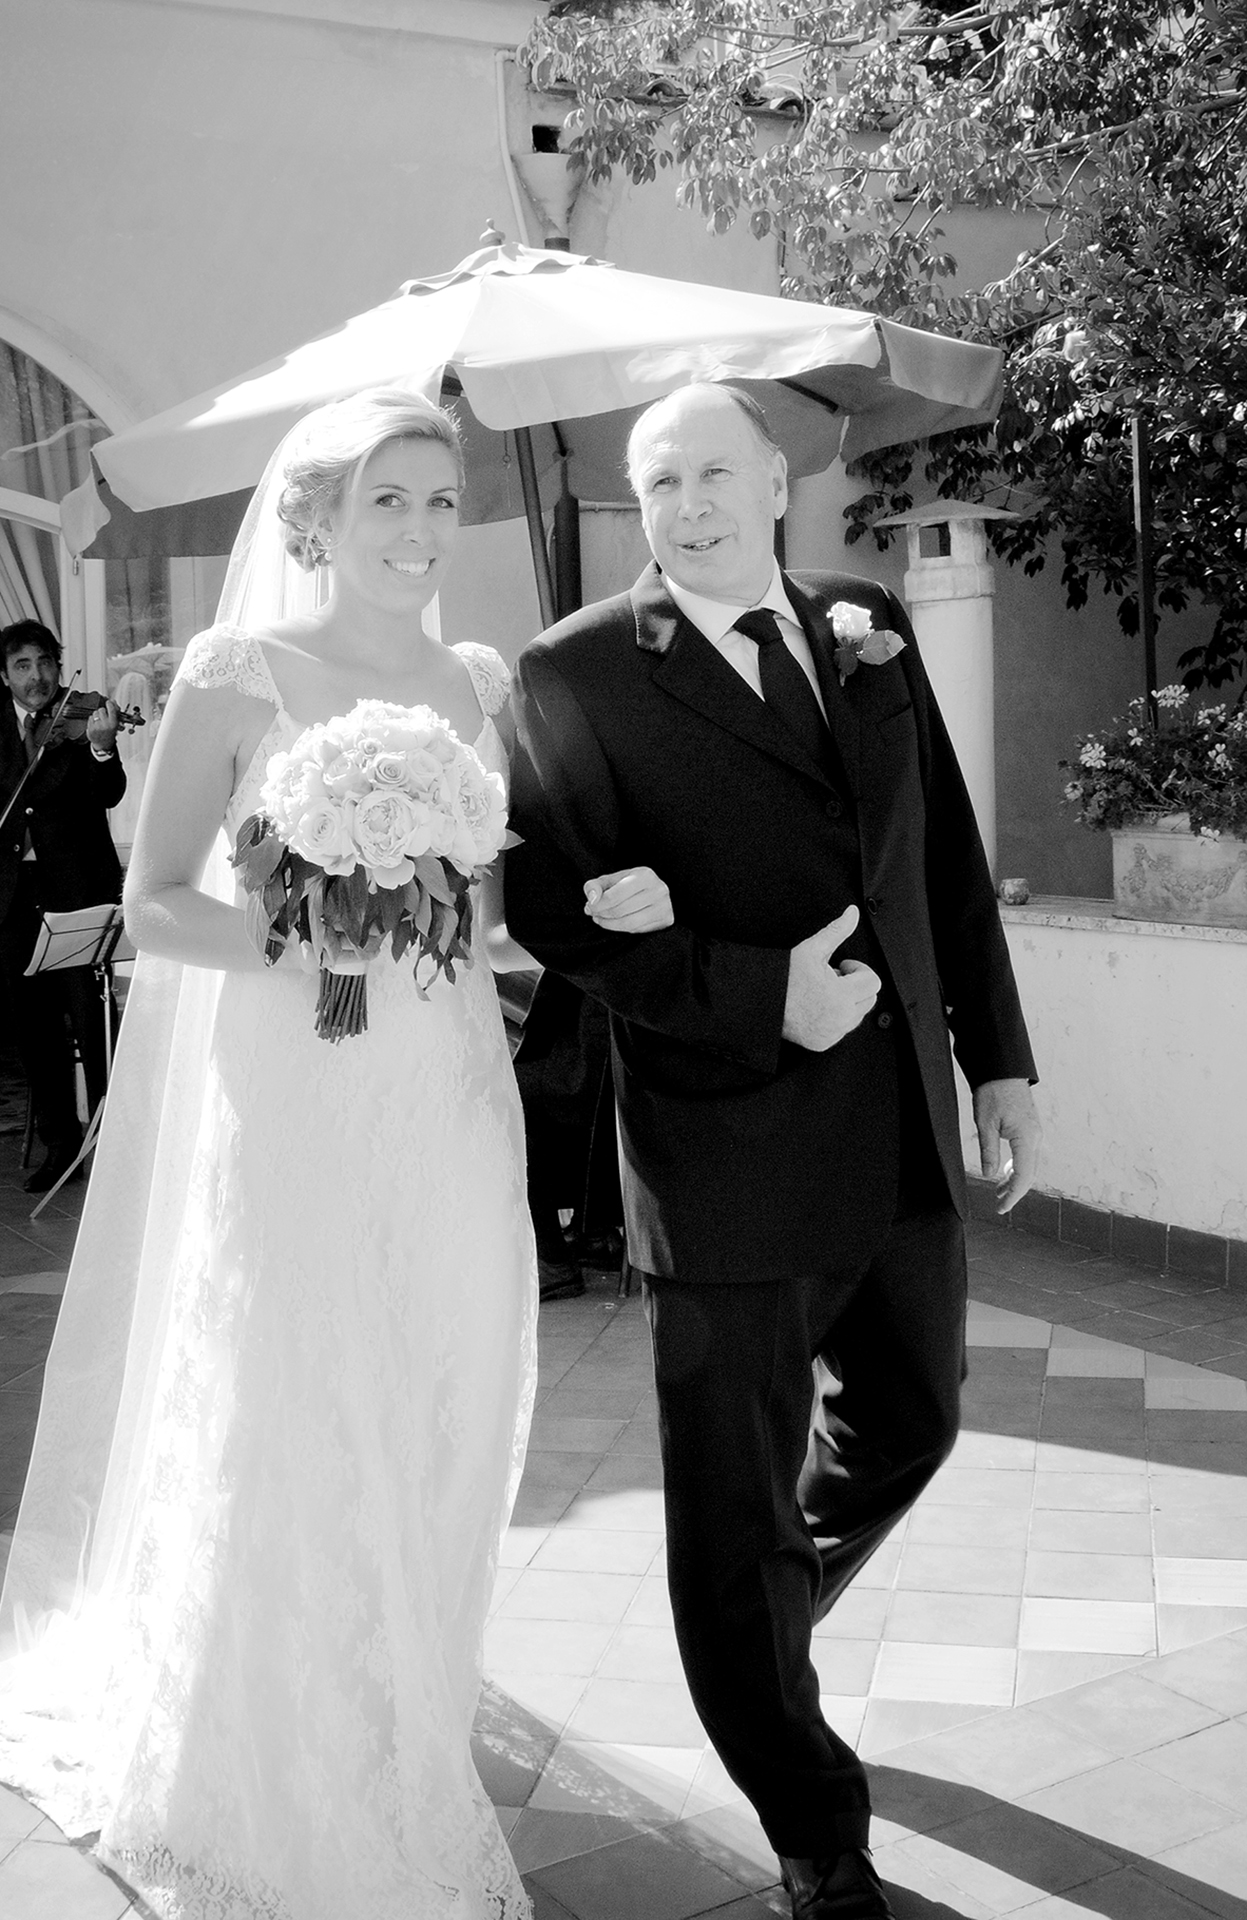 Positano Civil Wedding Photographer